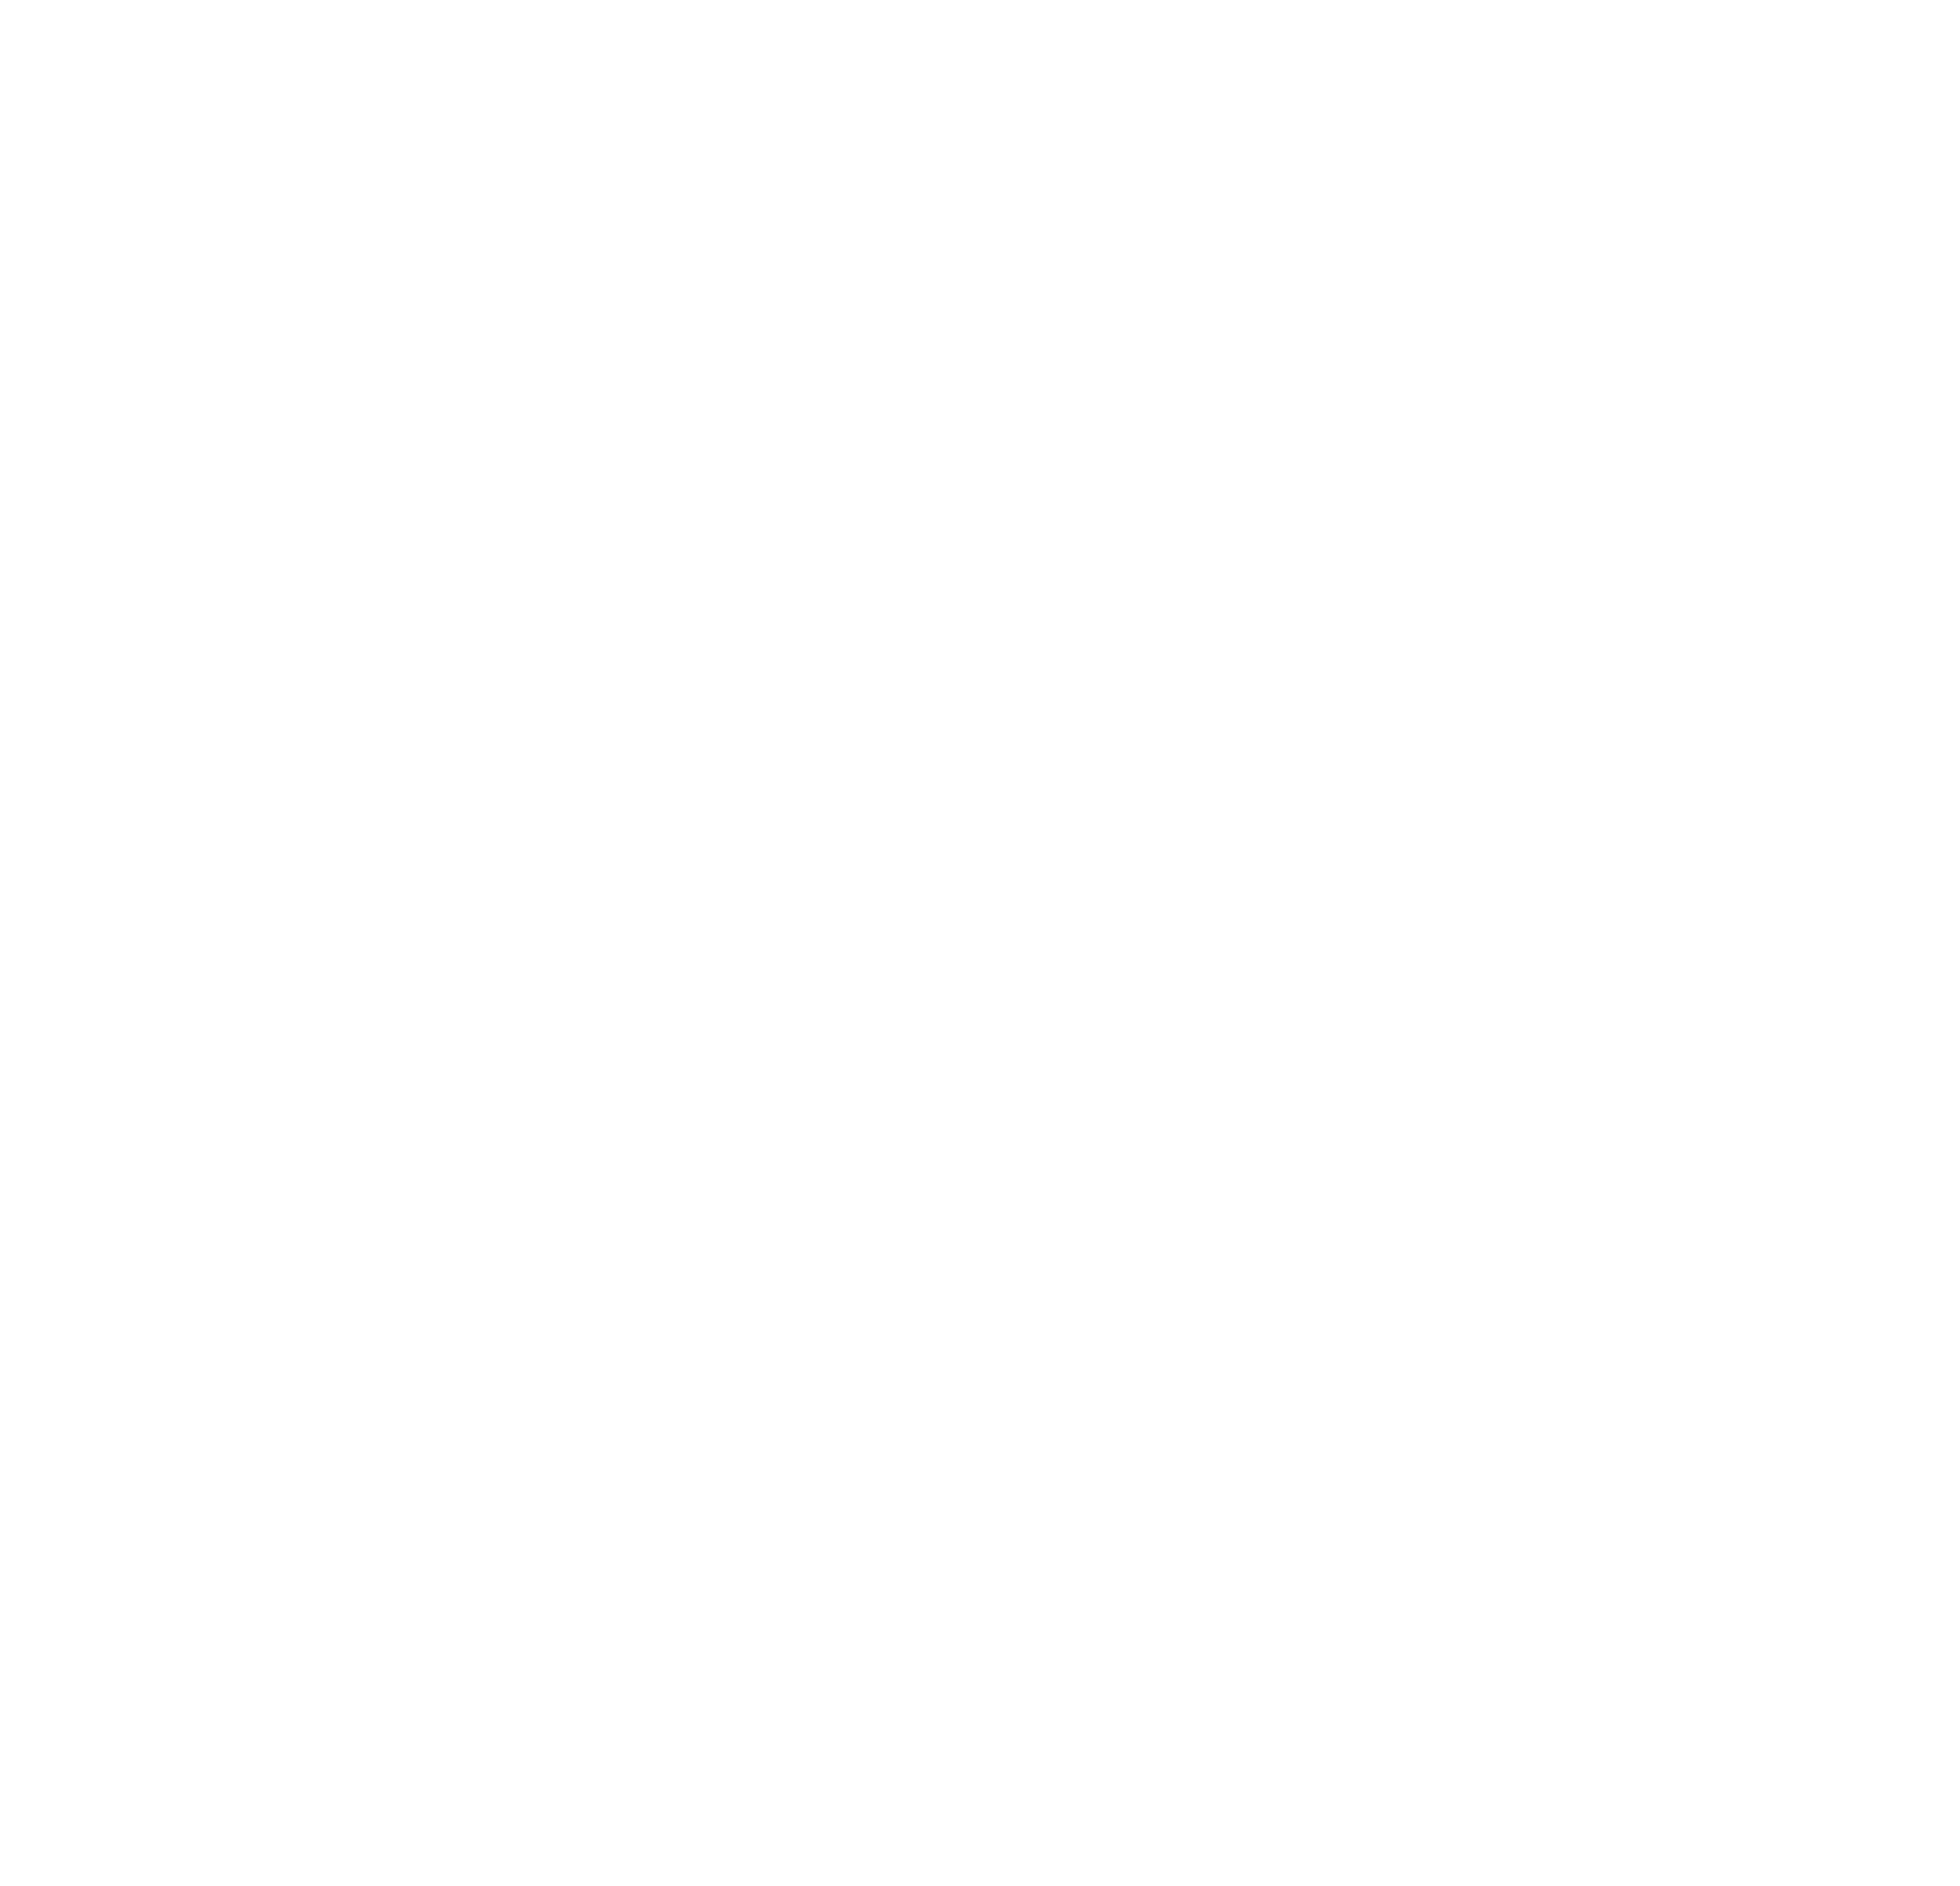 The Summer Club Merch